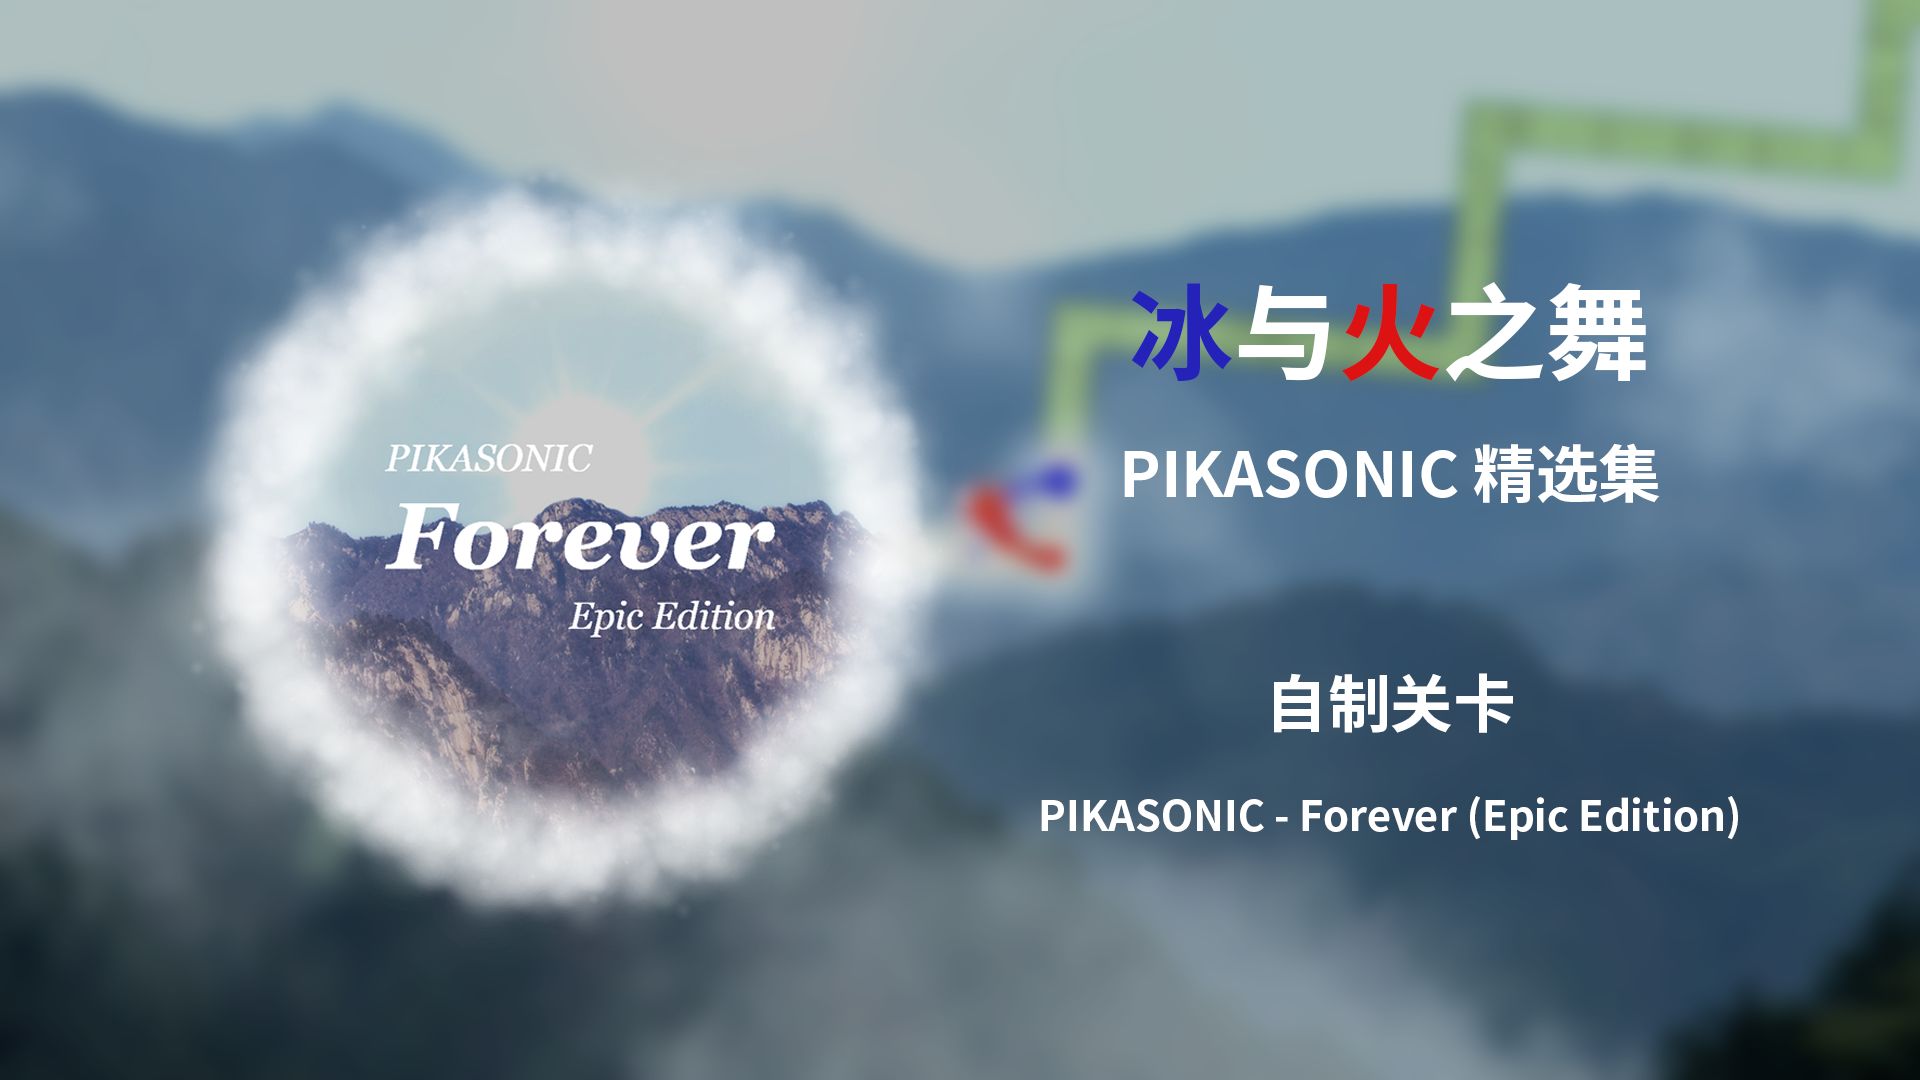 【冰与火之舞/PIKASONIC精选集】PIKASONIC - Forever (Epic Edition)